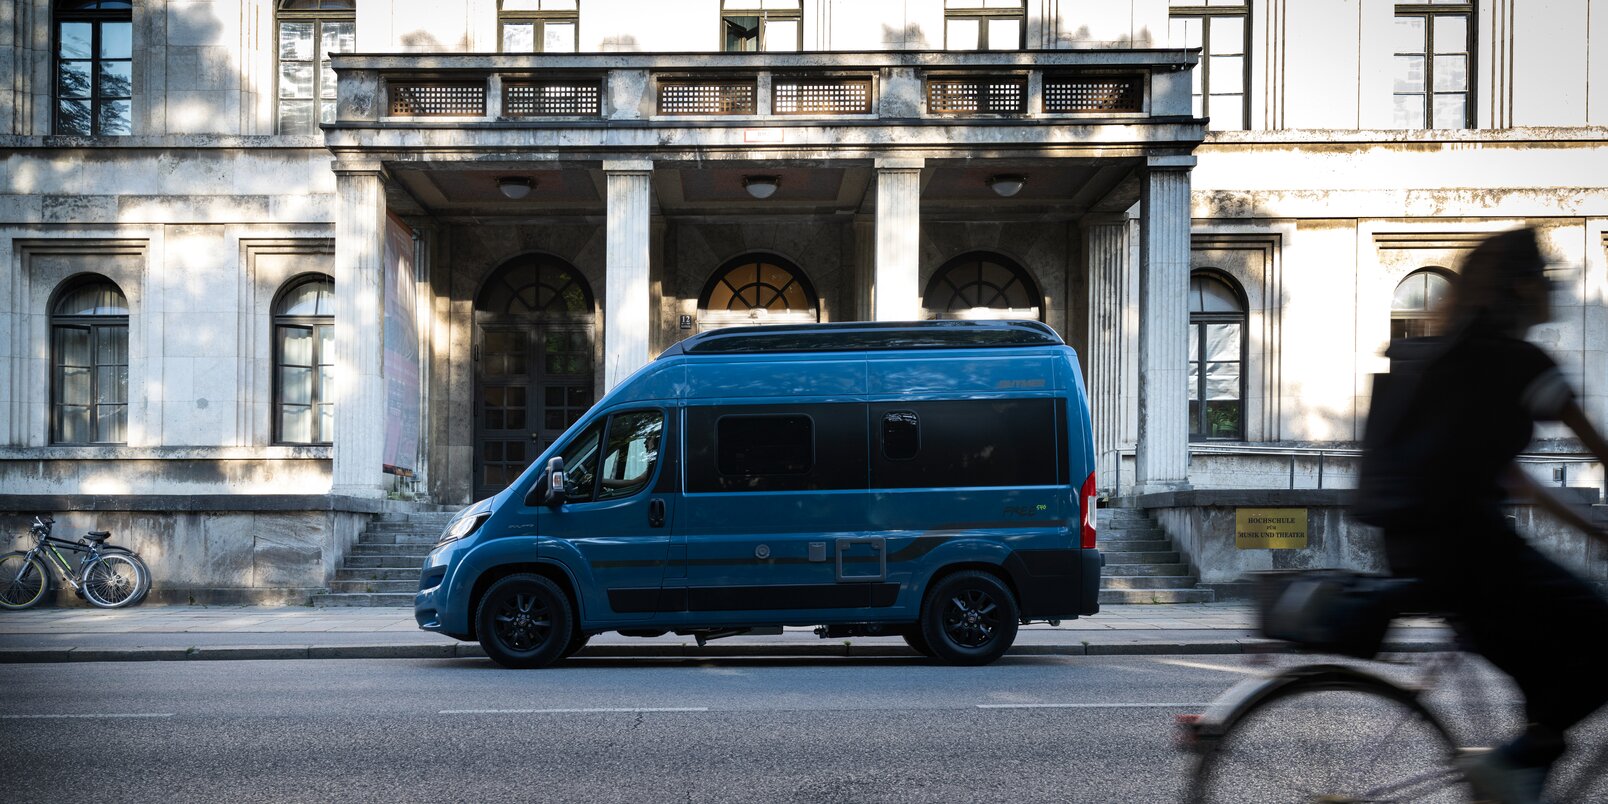 Il Camper Van Free HYMER colore blu-metallic è parcheggiato davanti ad un edificio vecchio in città